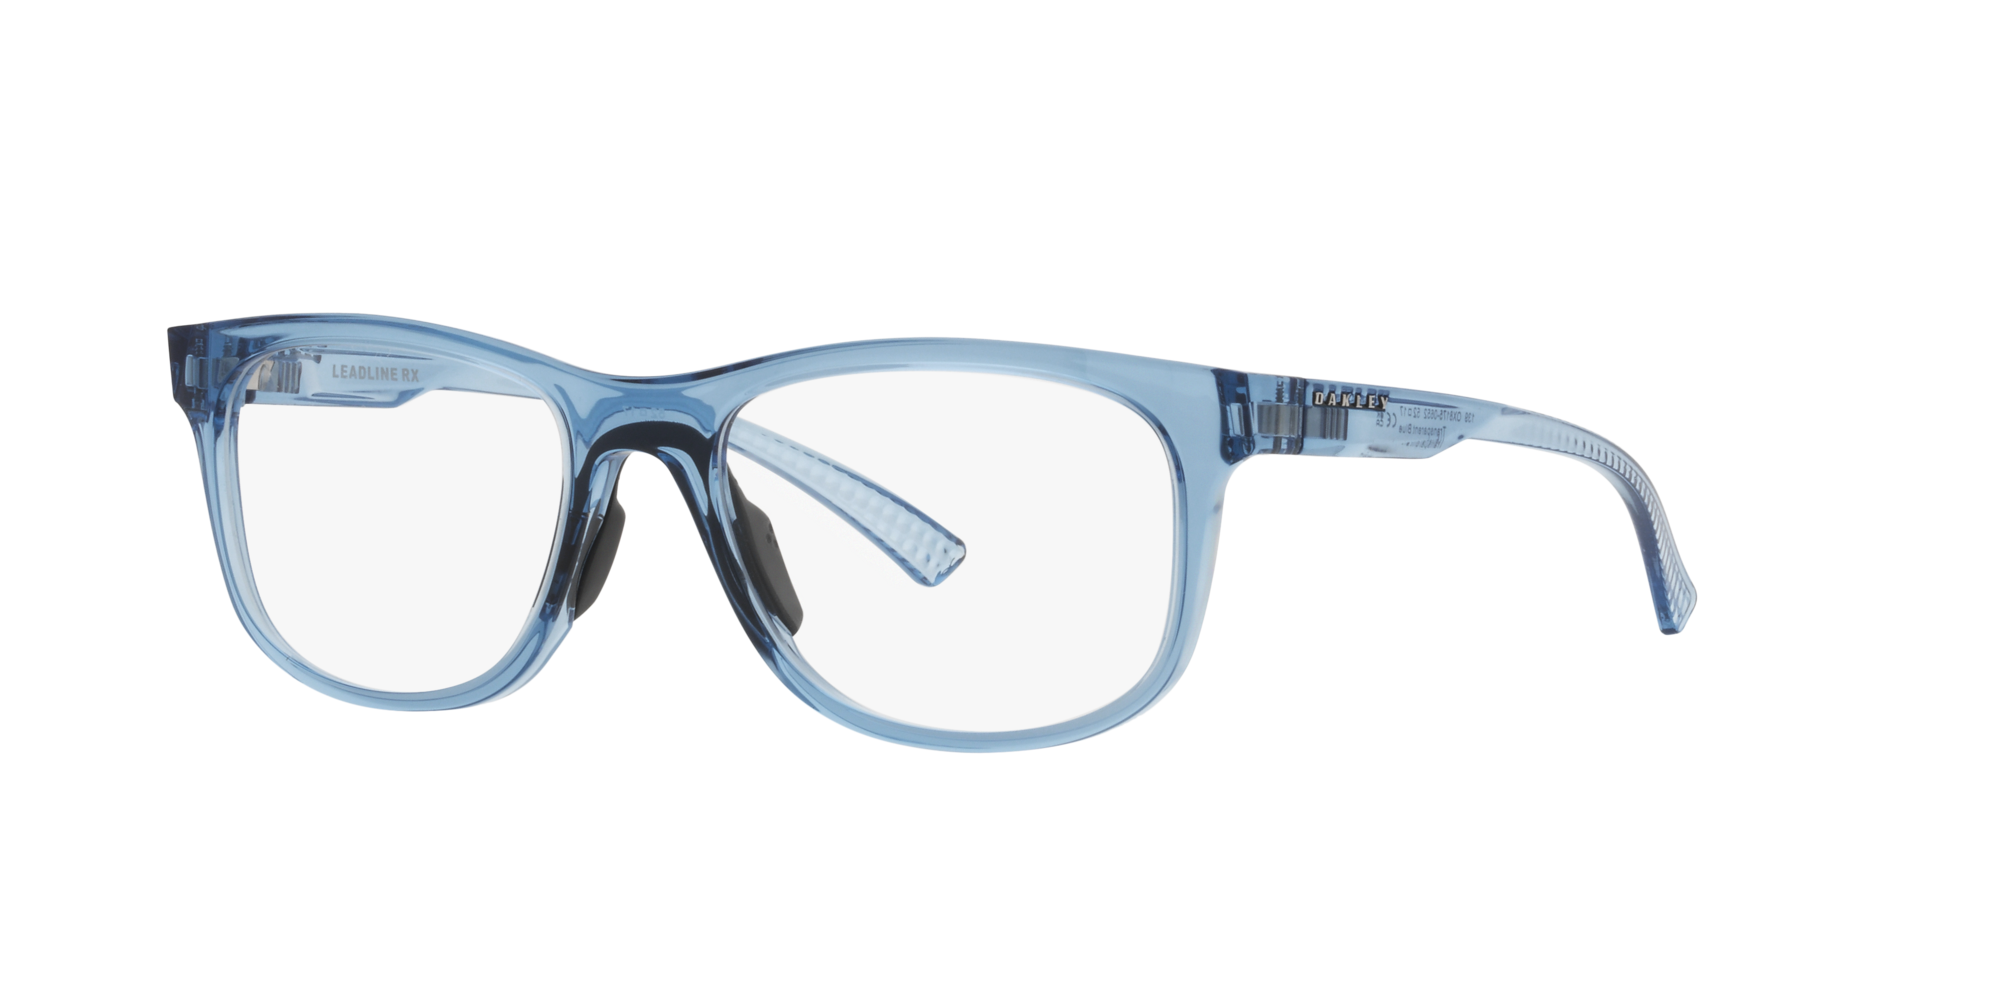 Das Bild zeigt die Korrektionsbrille OX8175 817506 von der Marke Oakley  in blau transparent.